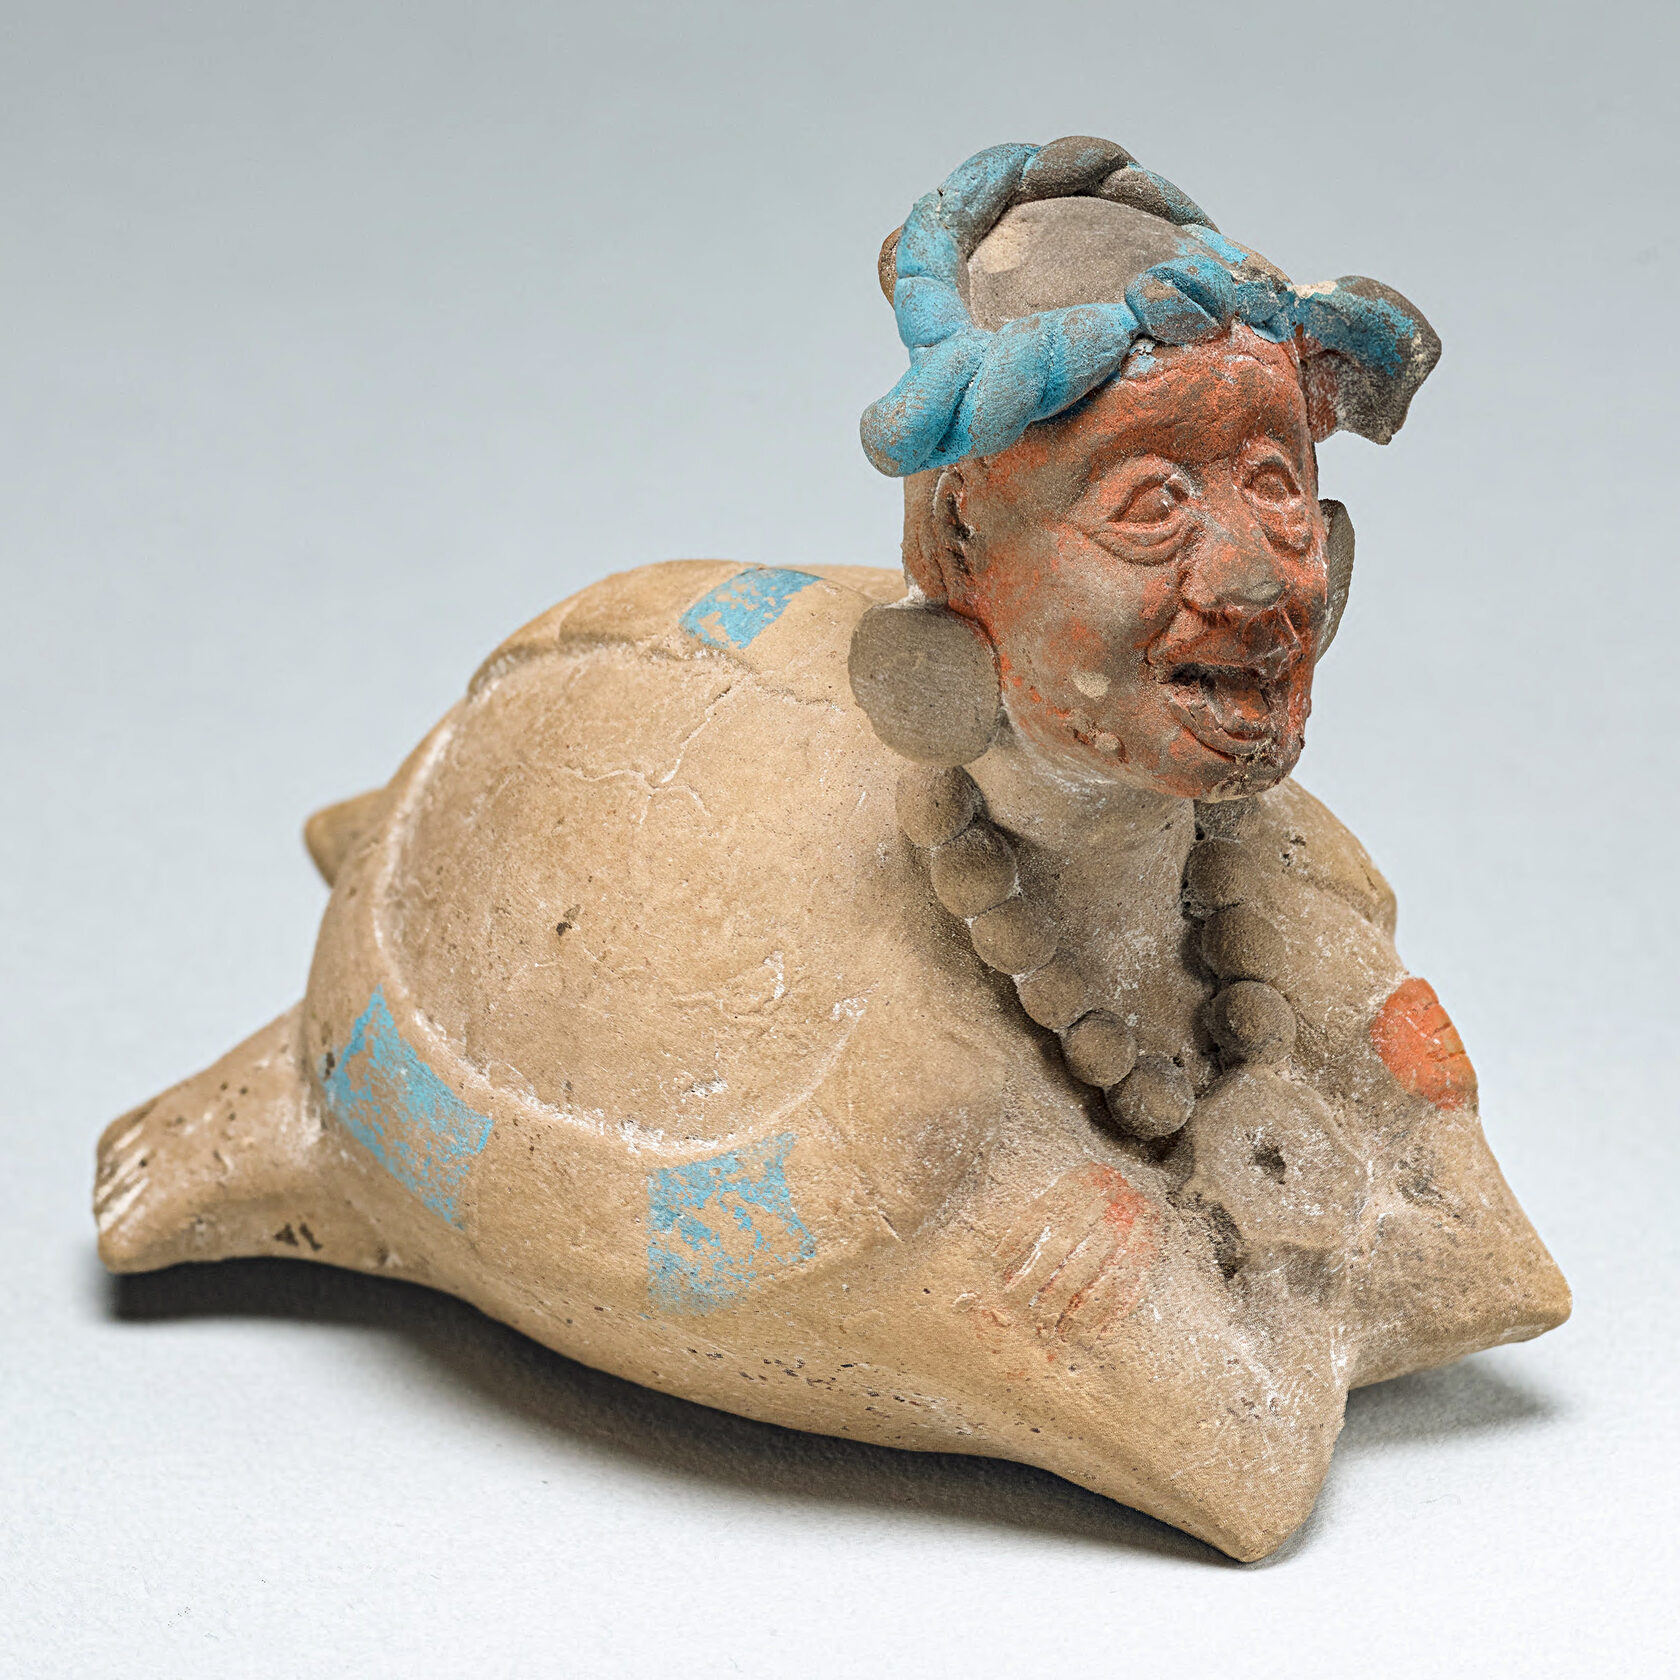 Погремушка или свисток в виде Бога Н (God N) в панцире черепахи. Майя, 600-900 гг. н.э. Коллекция Princeton University Art Museum.